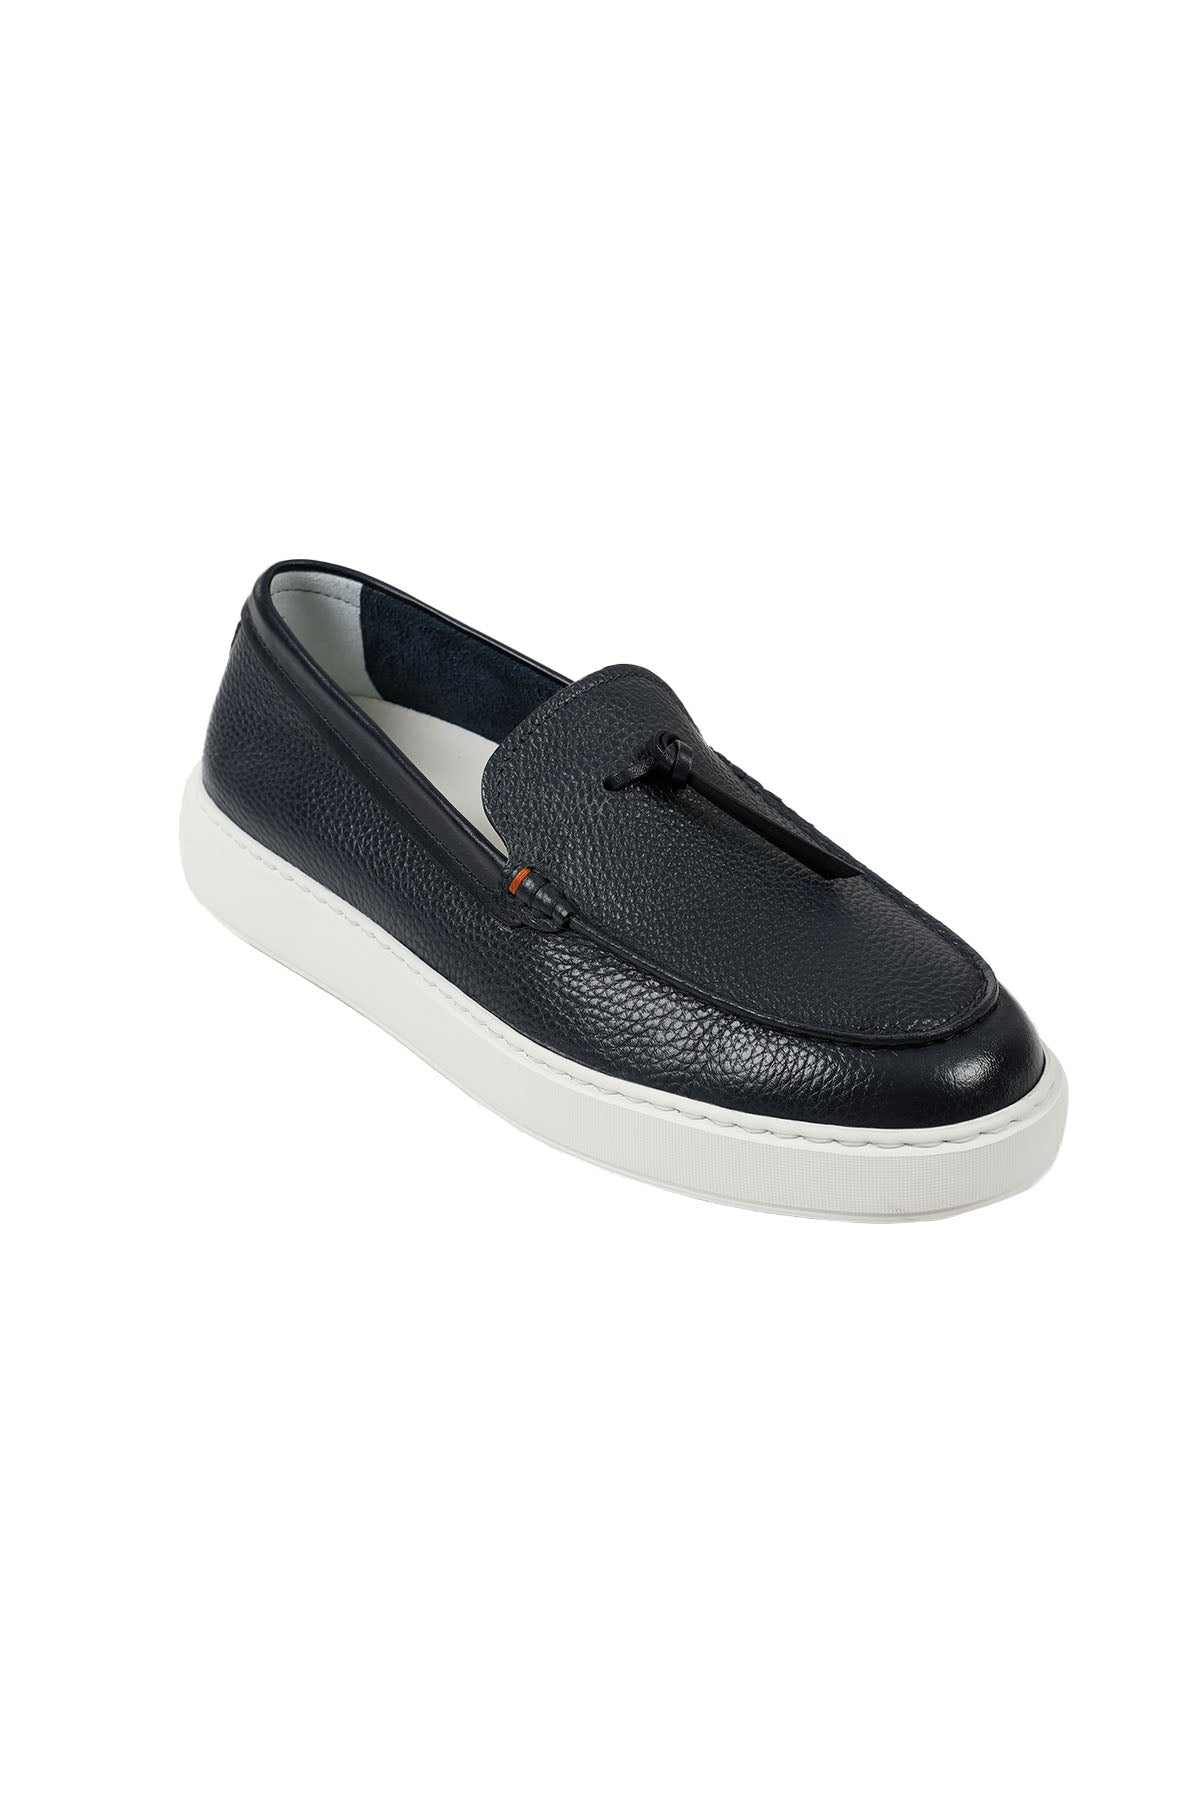 Santoni Püsküllü Deri Loafer Ayakkabı-Libas Trendy Fashion Store